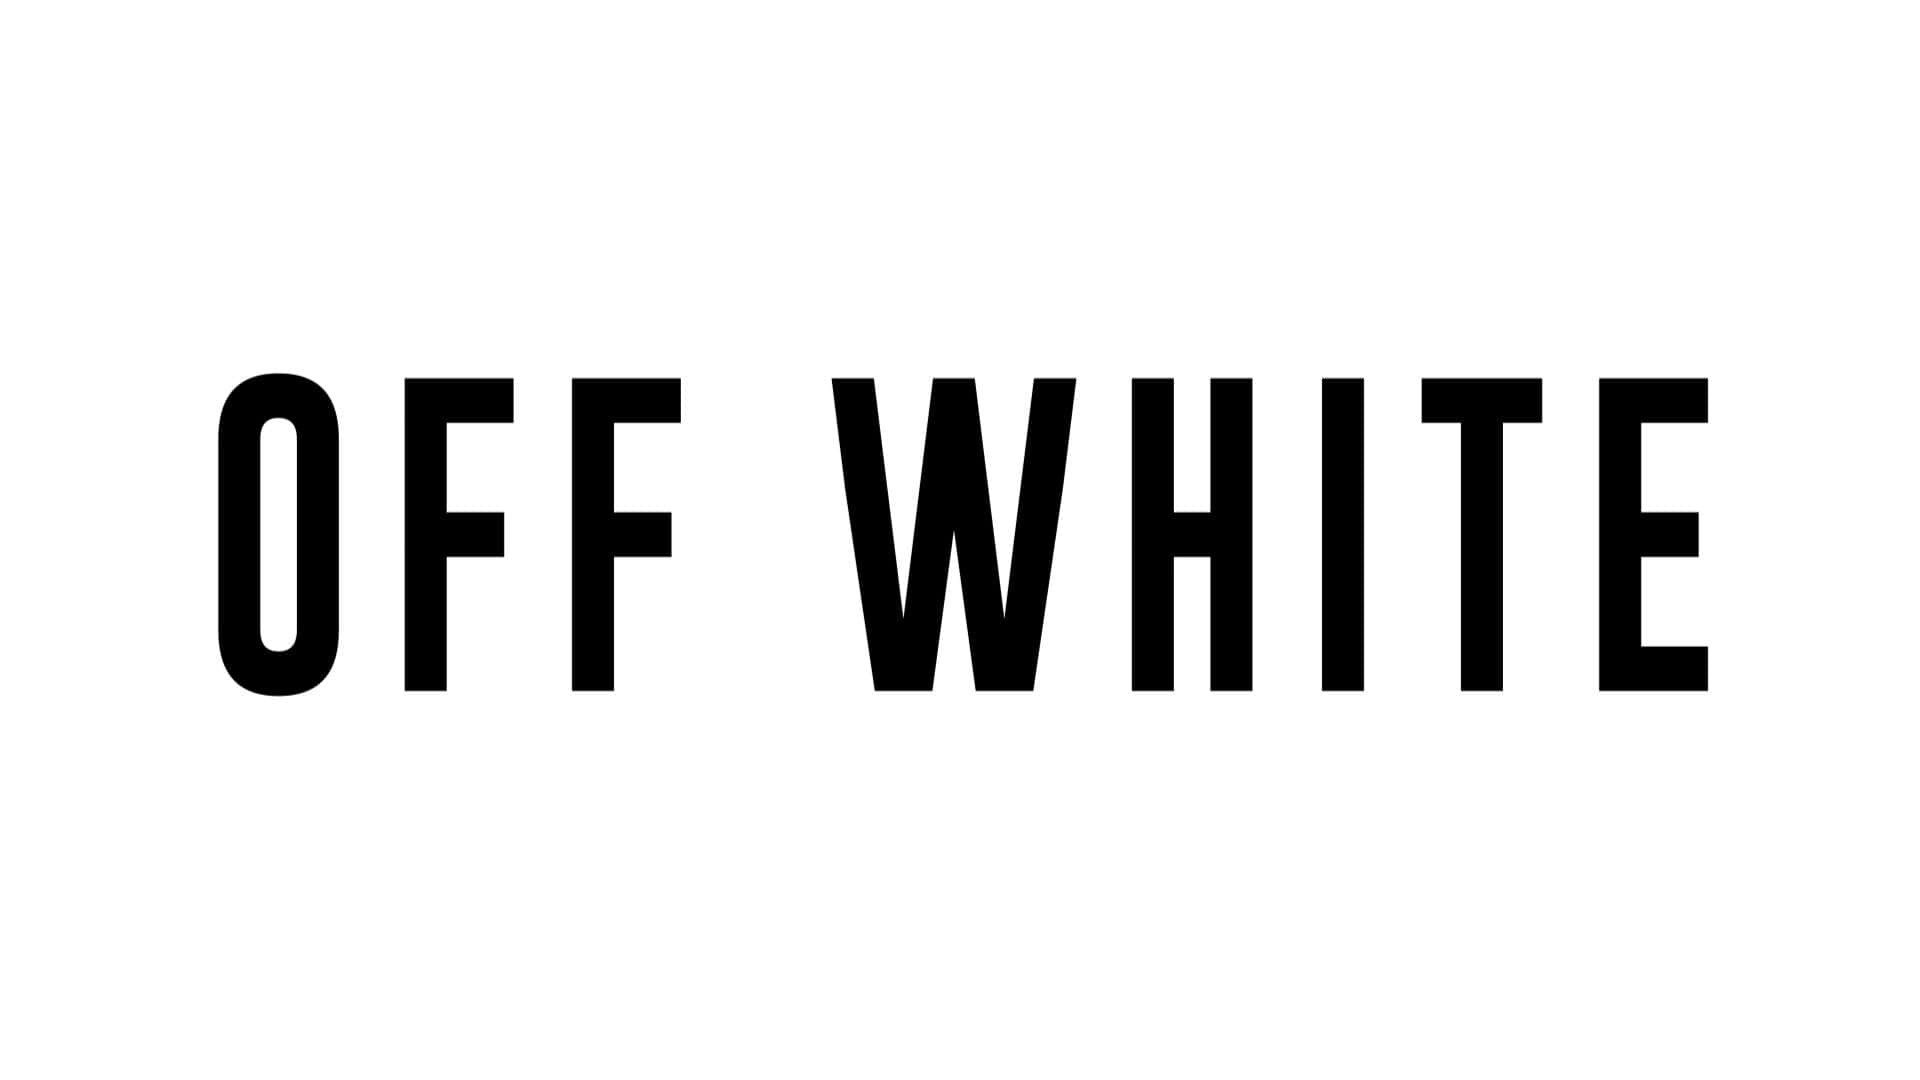 Offwhite-logotyp På En Vit Bakgrund. Wallpaper